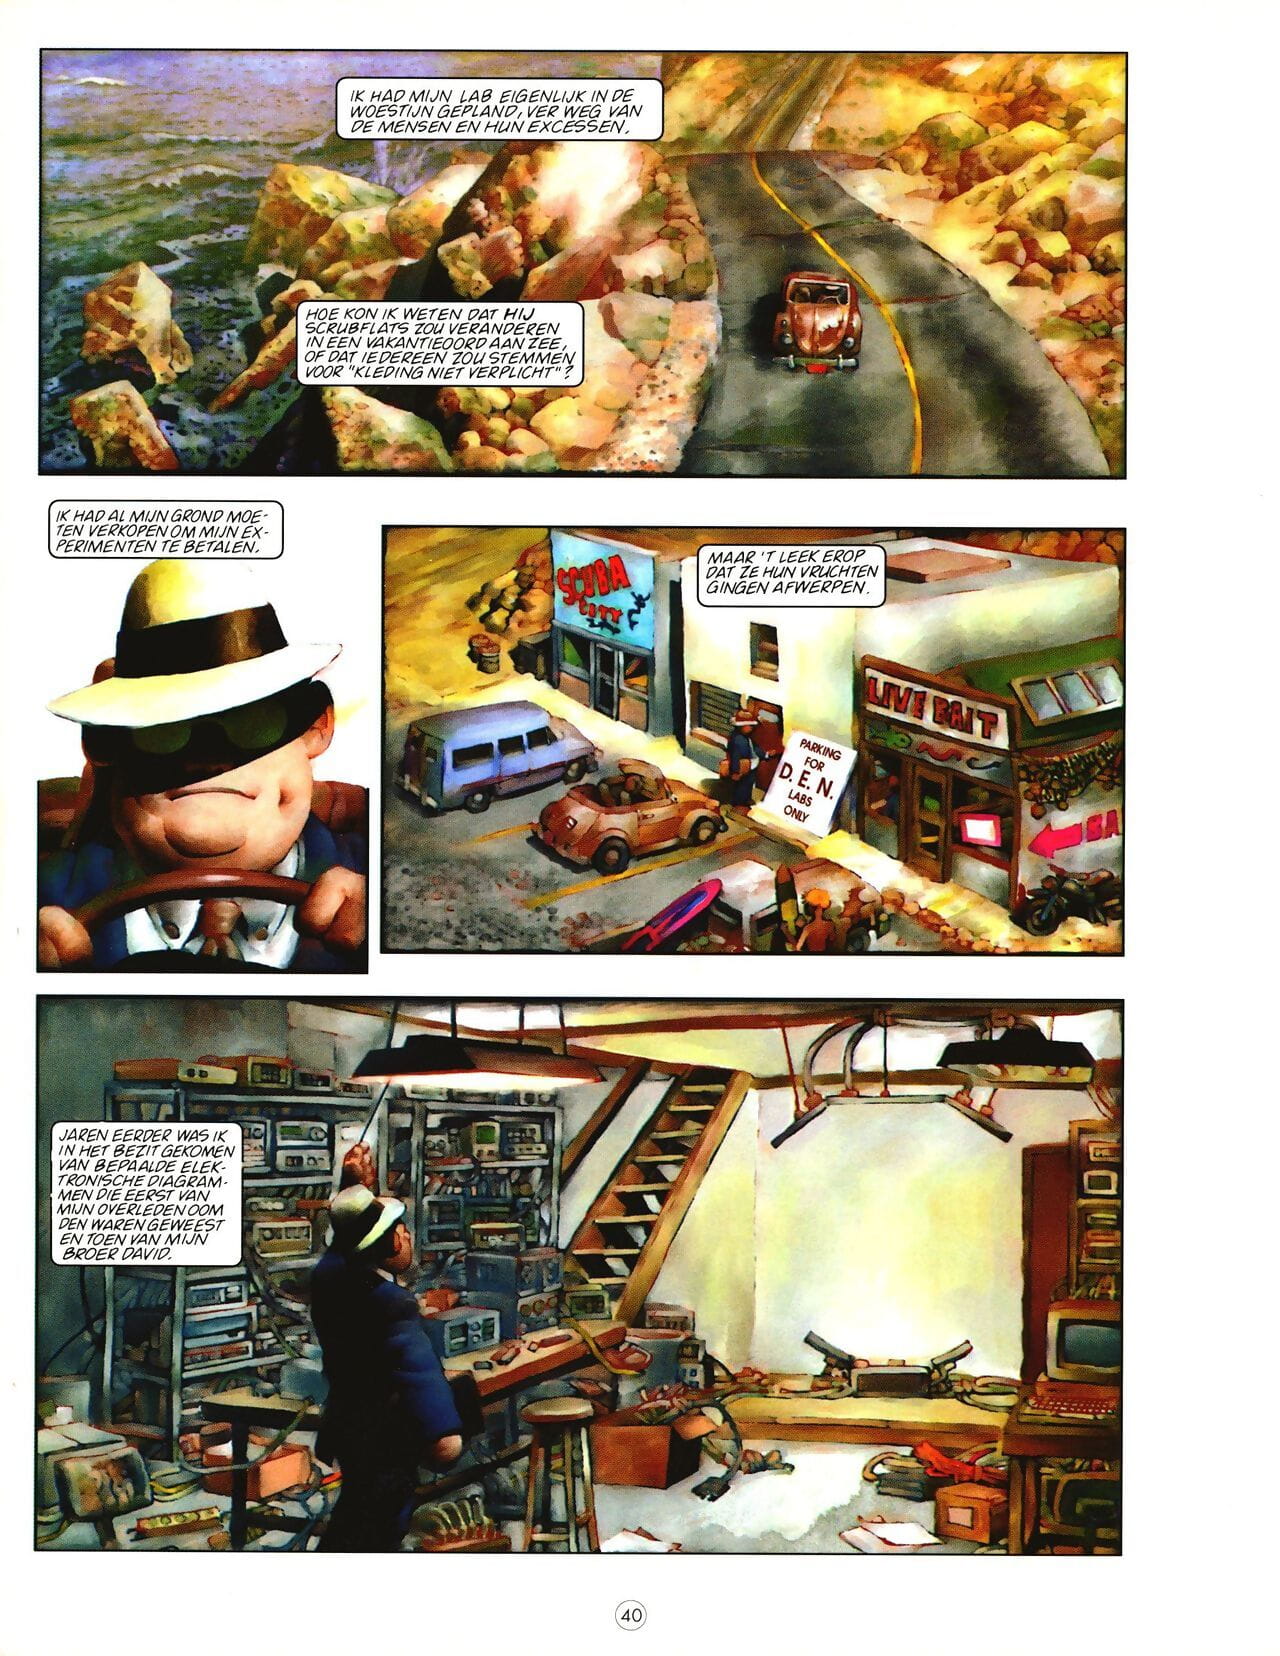 ペントハウス comix 雑誌 01 部分 2 page 1